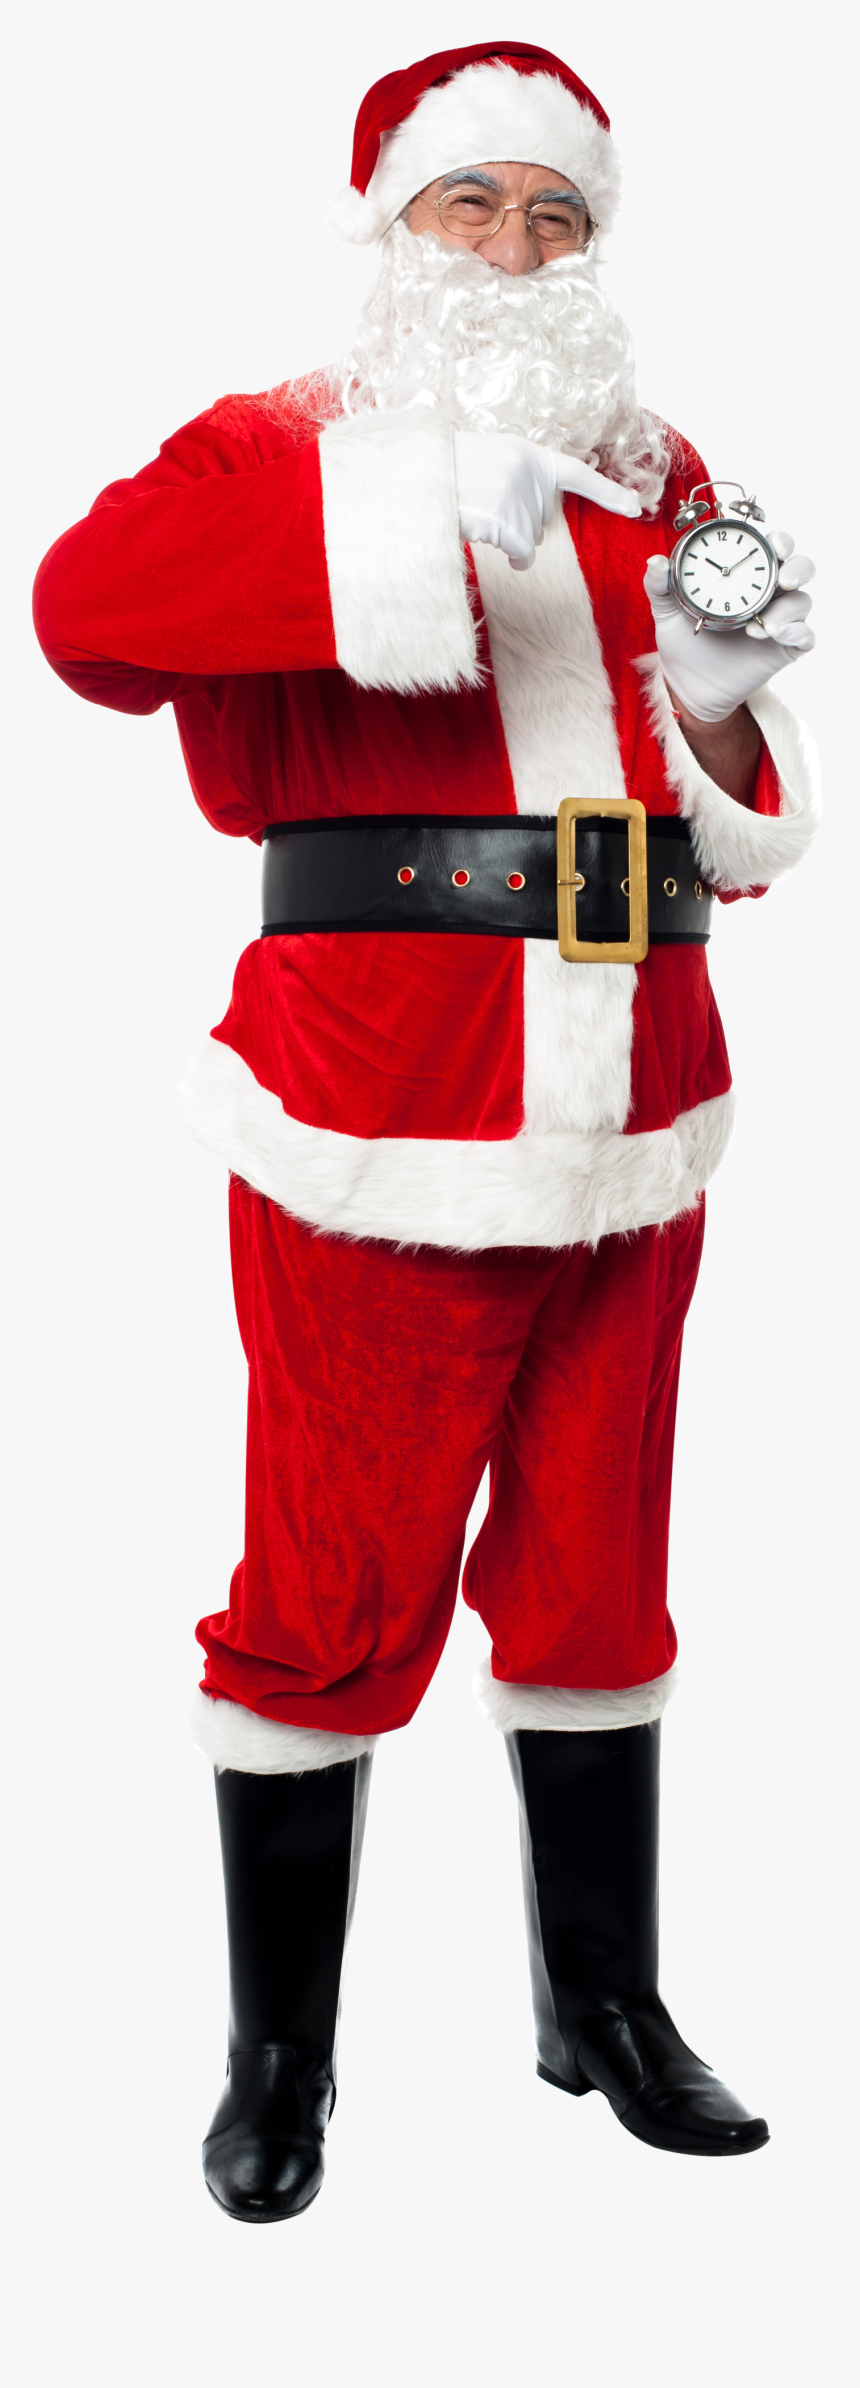 Santa Claus Png Image - Santa Claus, Transparent Png, Free Download